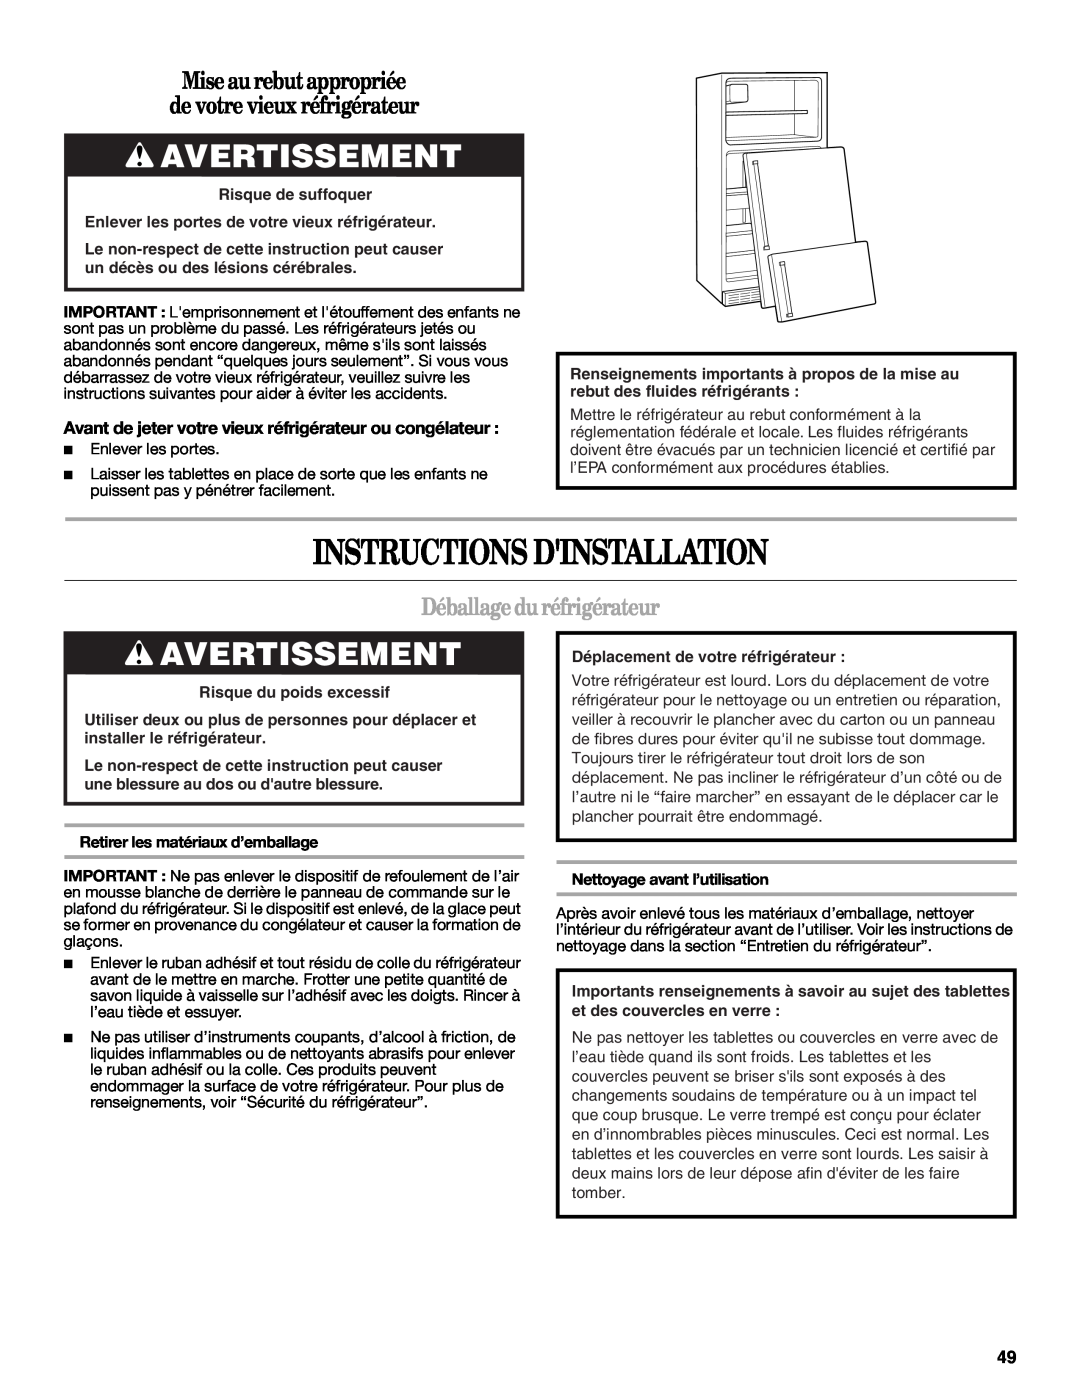 Whirlpool W10359303A Instructions Dinstallation, Avertissement, Mise aurebut appropriée de votre vieux réfrigérateur 